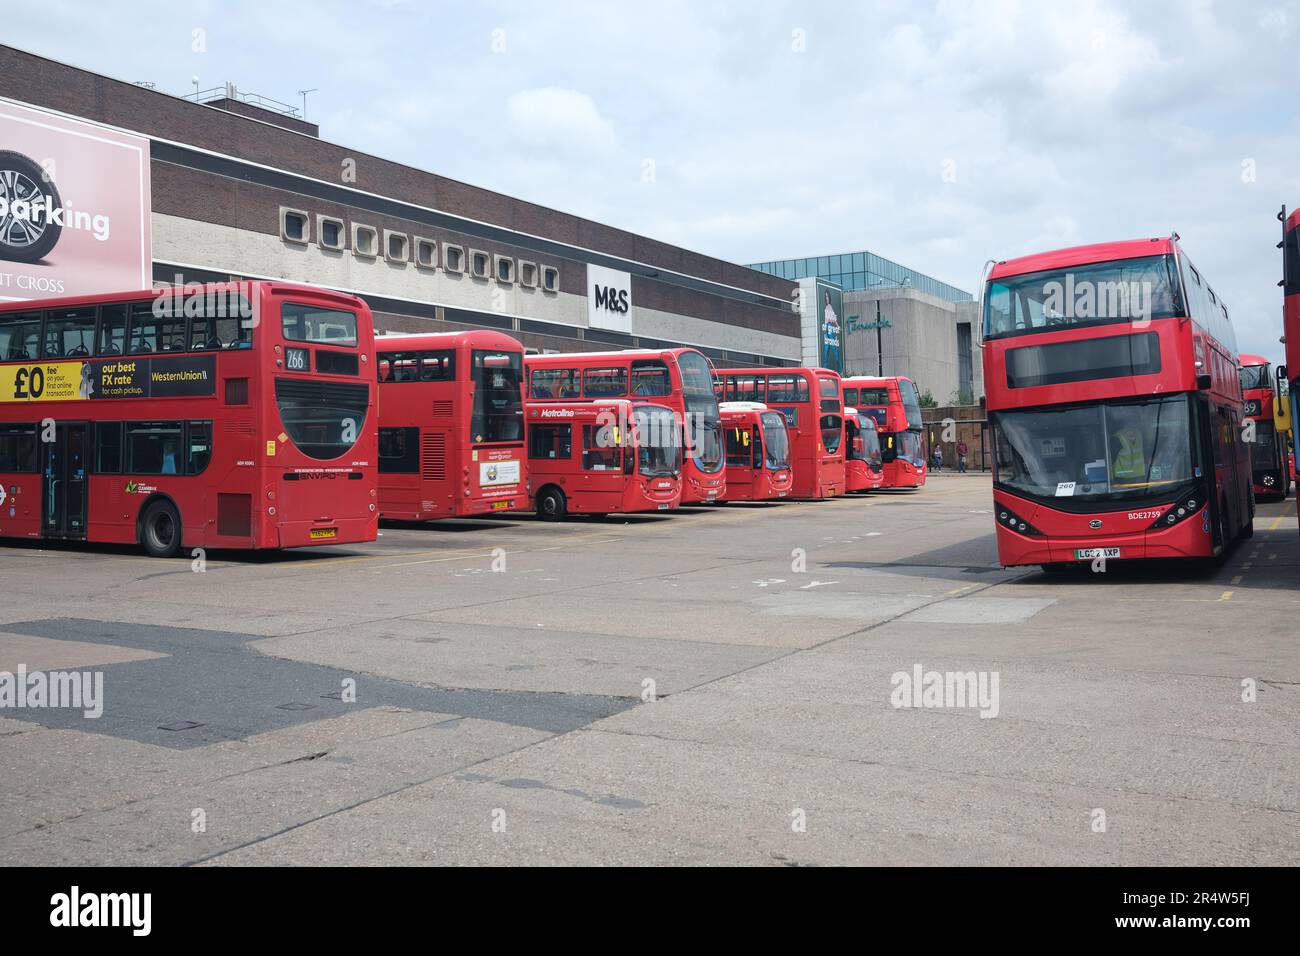 Bus Red London garés à l'extérieur du centre commercial Brent Cross, dans le nord de Londres Banque D'Images